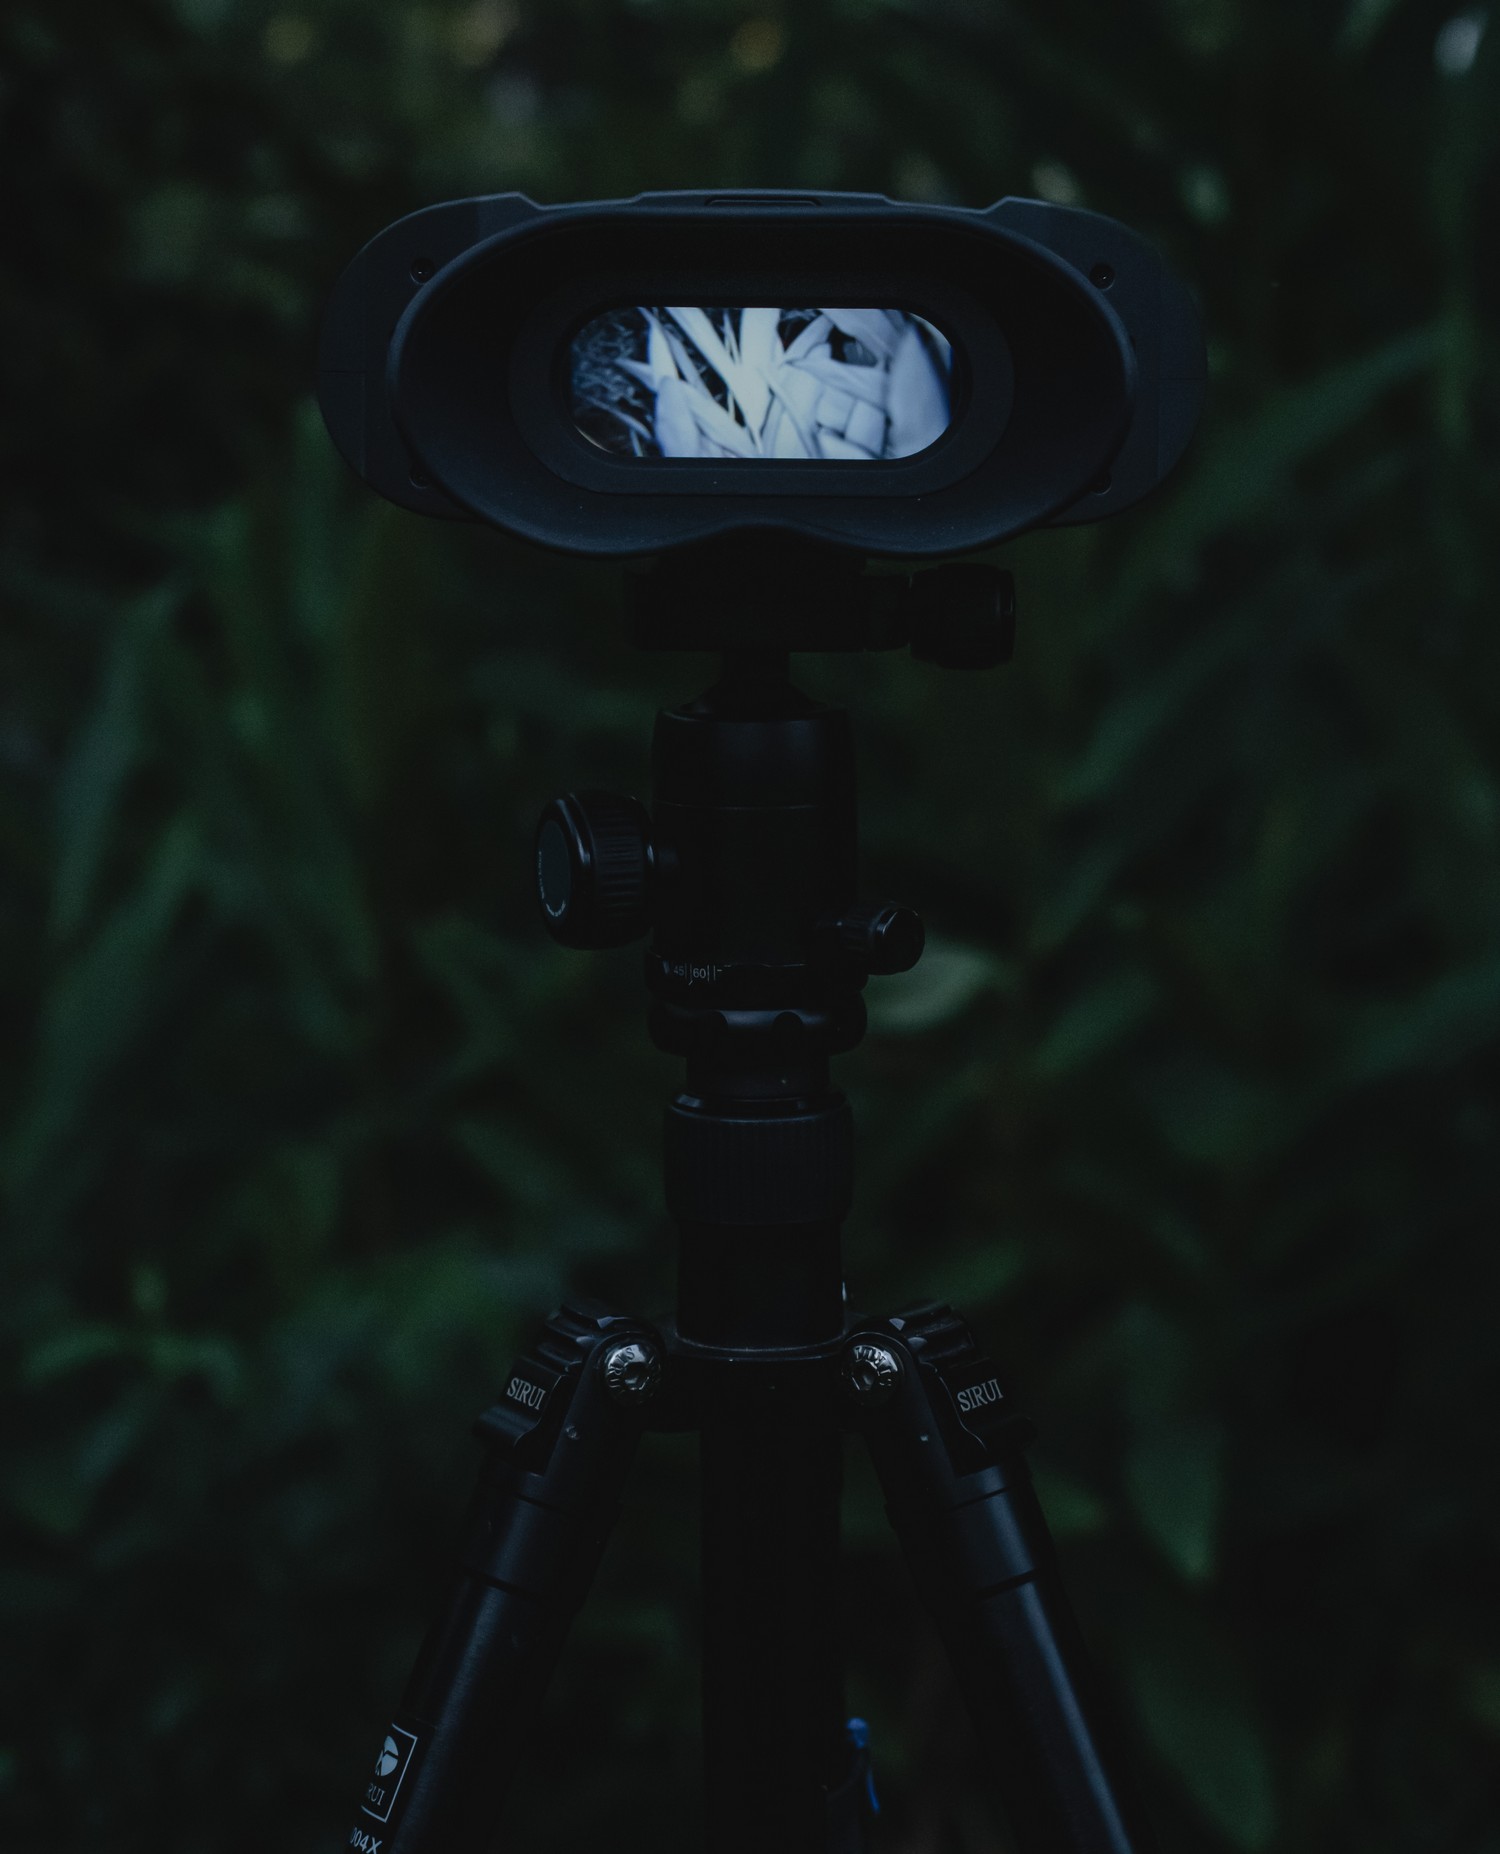 noktowizor NVB 200 - Automatyczne przełączanie trybu dziennego i nocnego w trybie dual